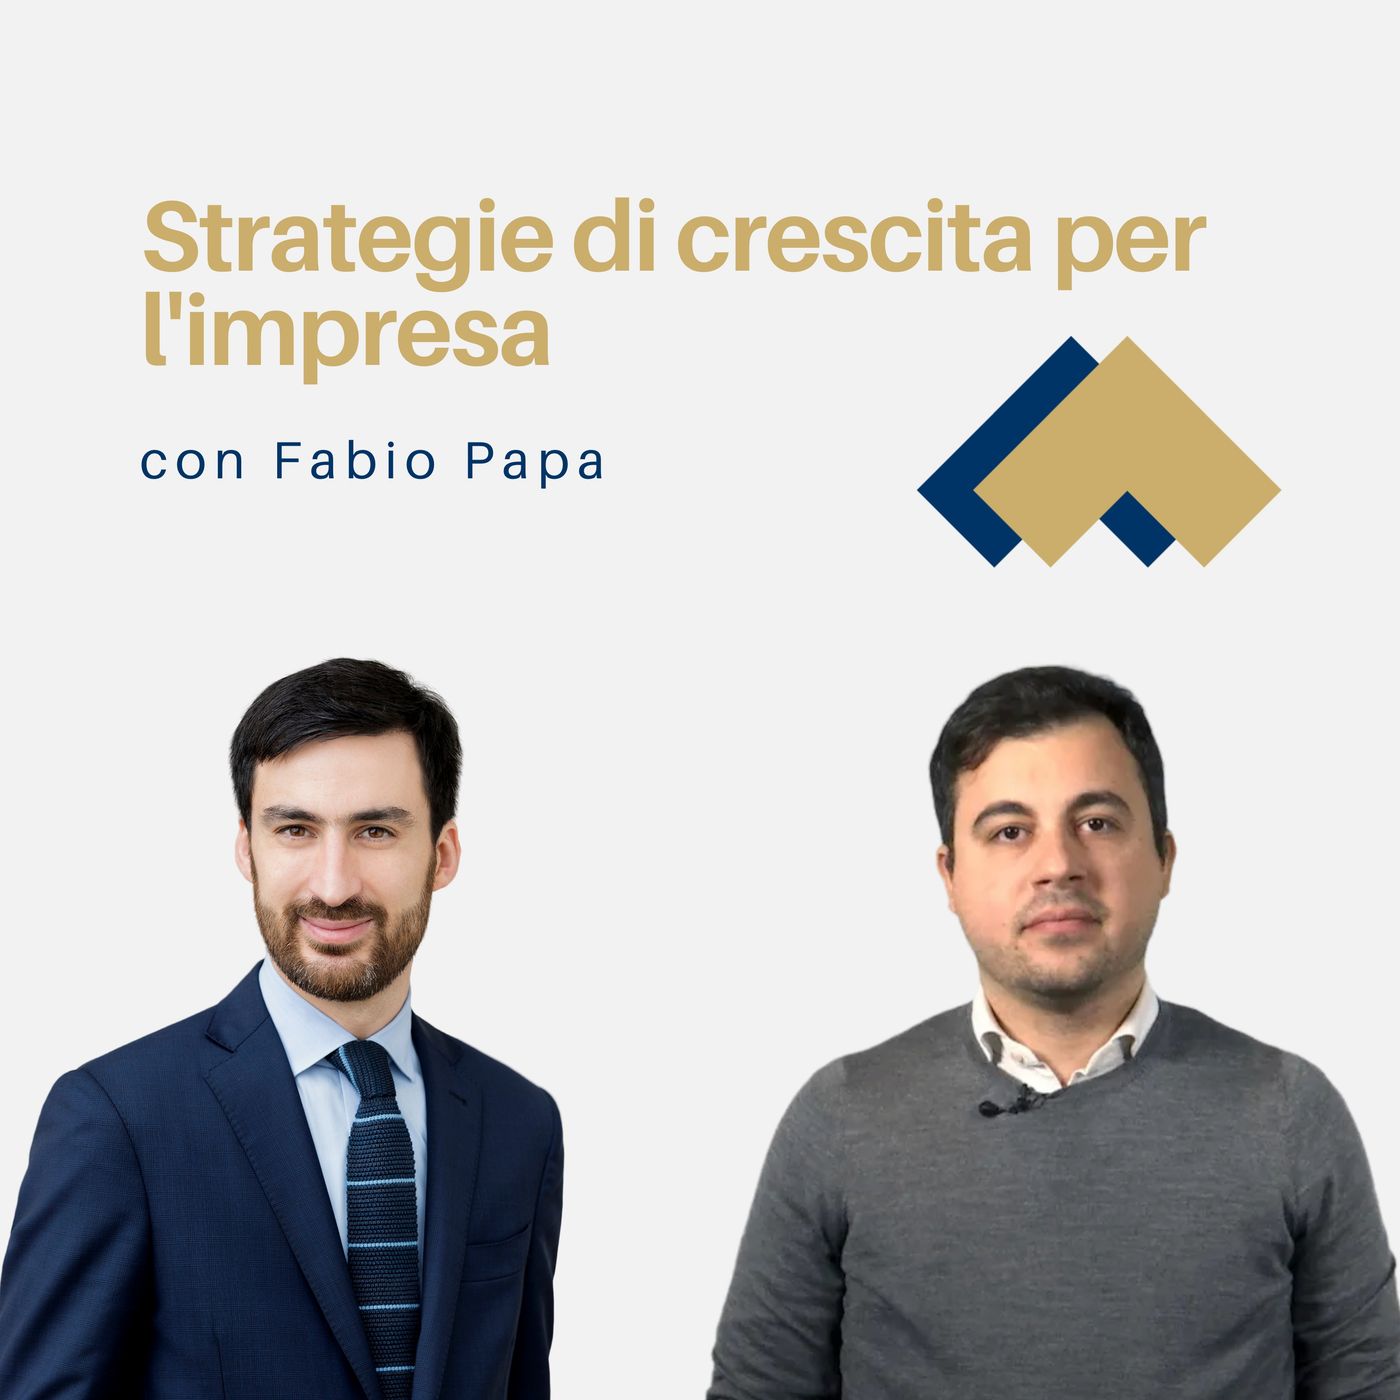 071 - Strategie di crescita per l'impresa con Fabio Papa